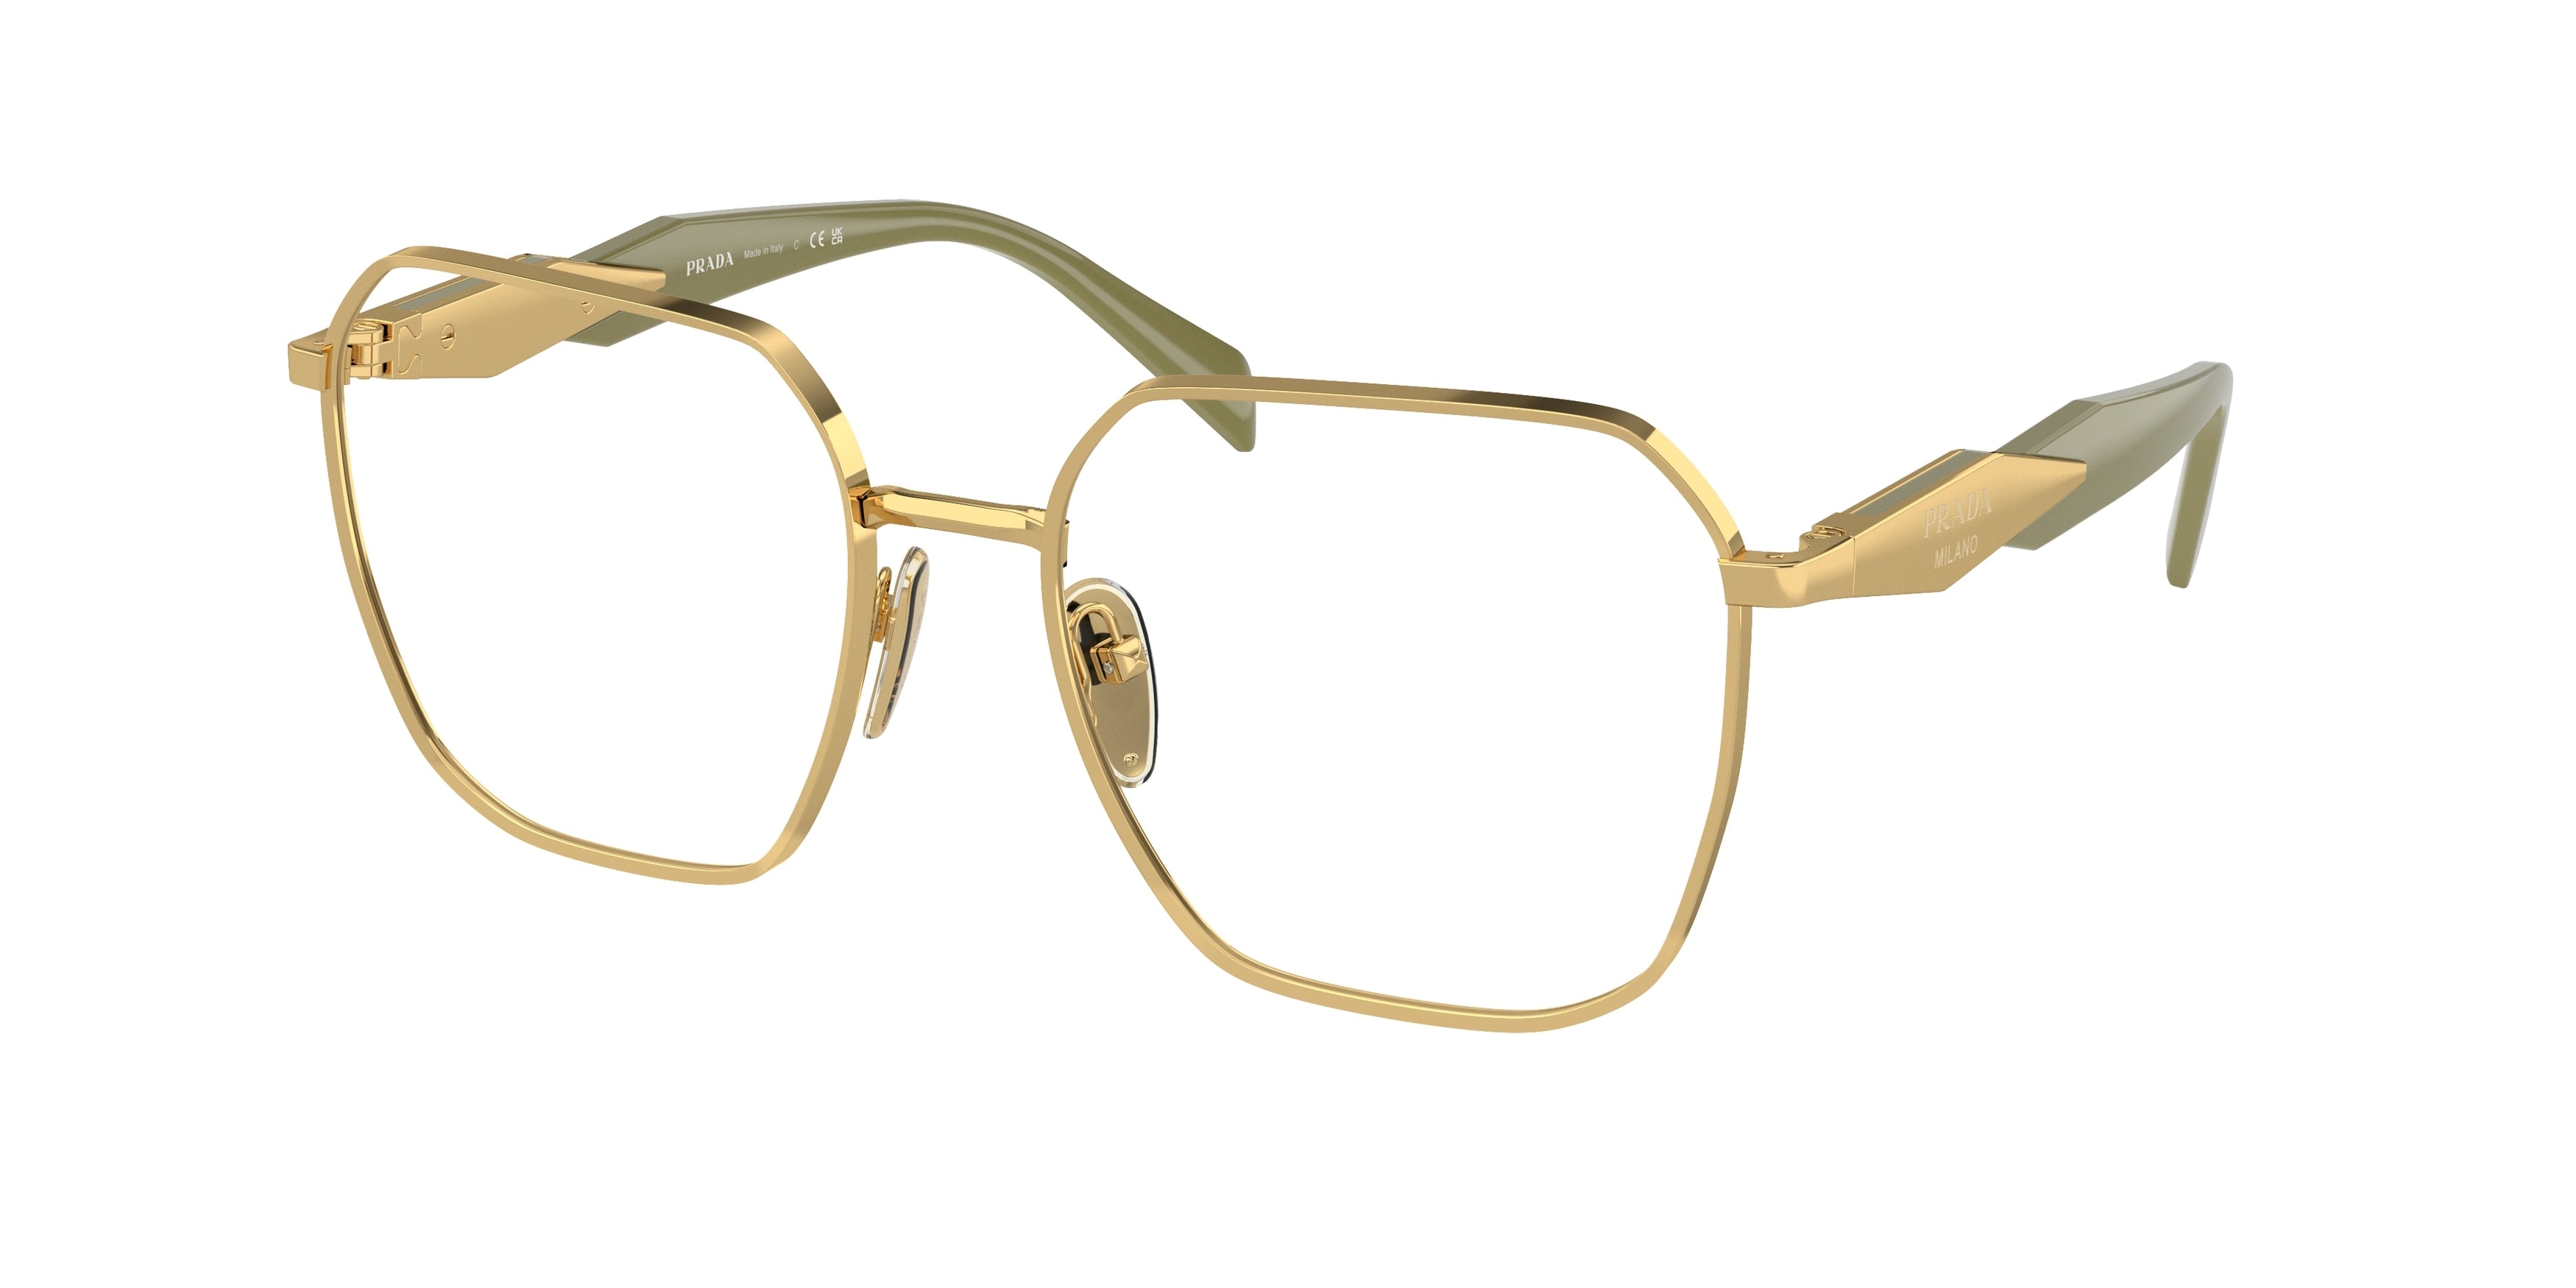 Prada PR56ZV Square Eyeglasses  5AK1O1-Gold 55-140-18 - Color Map Gold